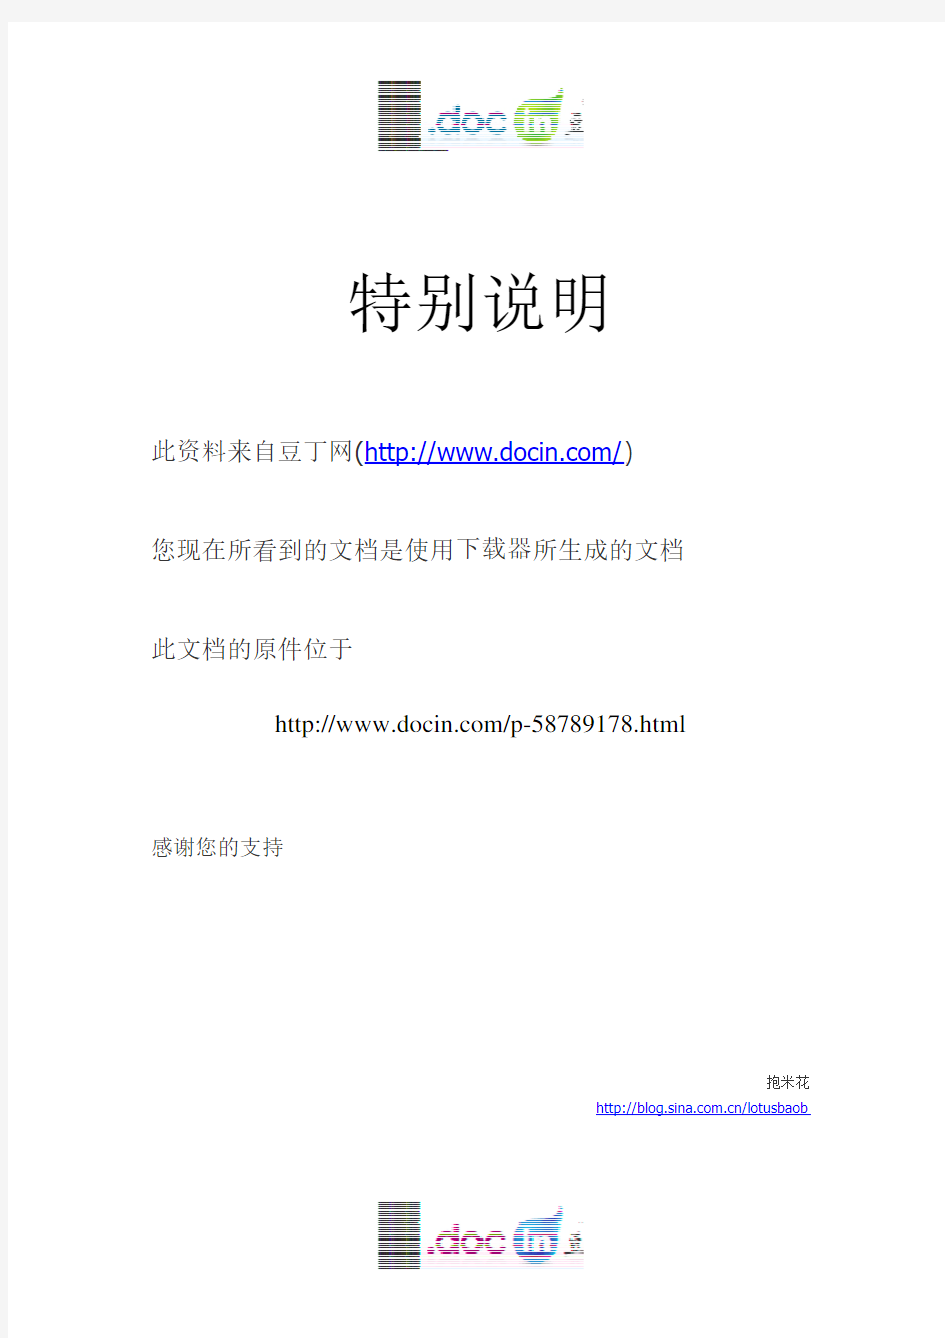 中国移动手机支付业务发展前景分析报告-工信部